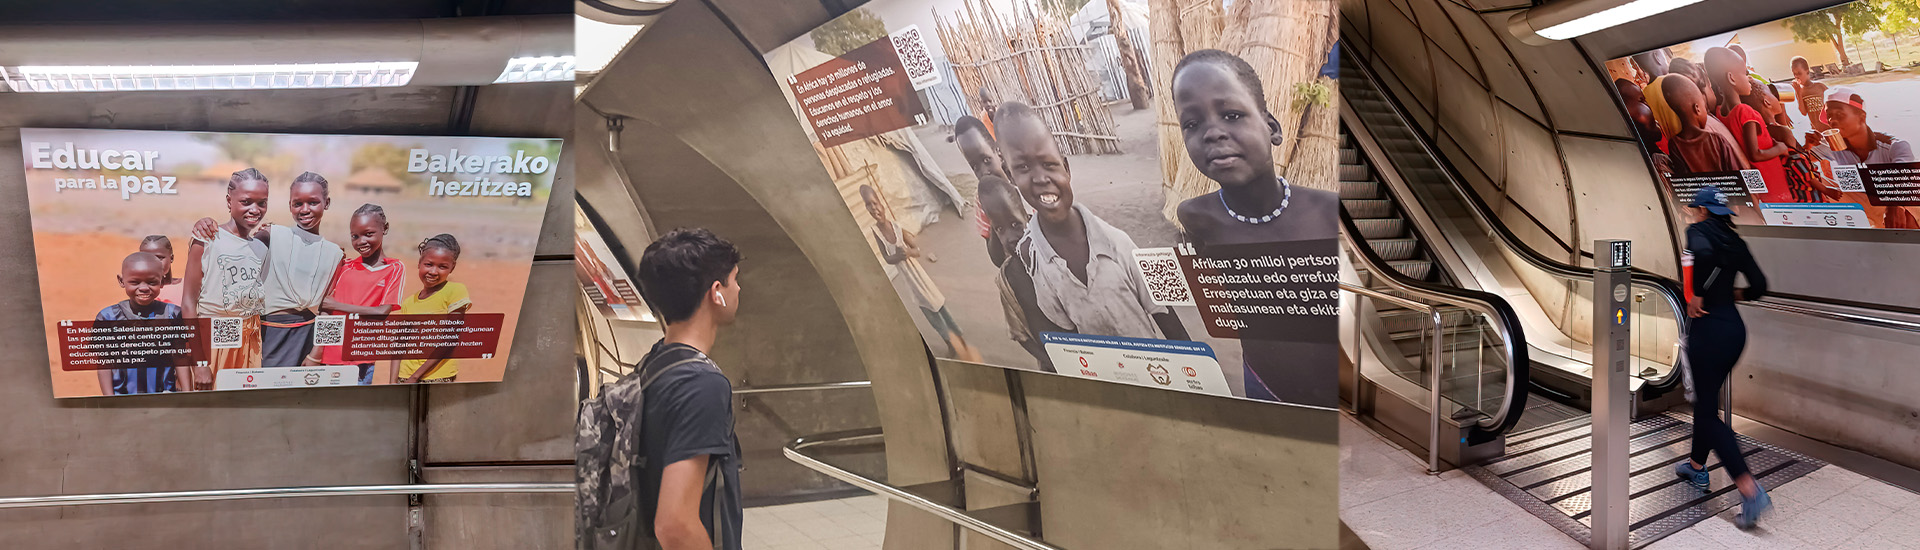 Exposición fotográfica ‘Educar para la paz’ en el metro de Bilbao sobre la situación de la infancia en Sudán del Sur